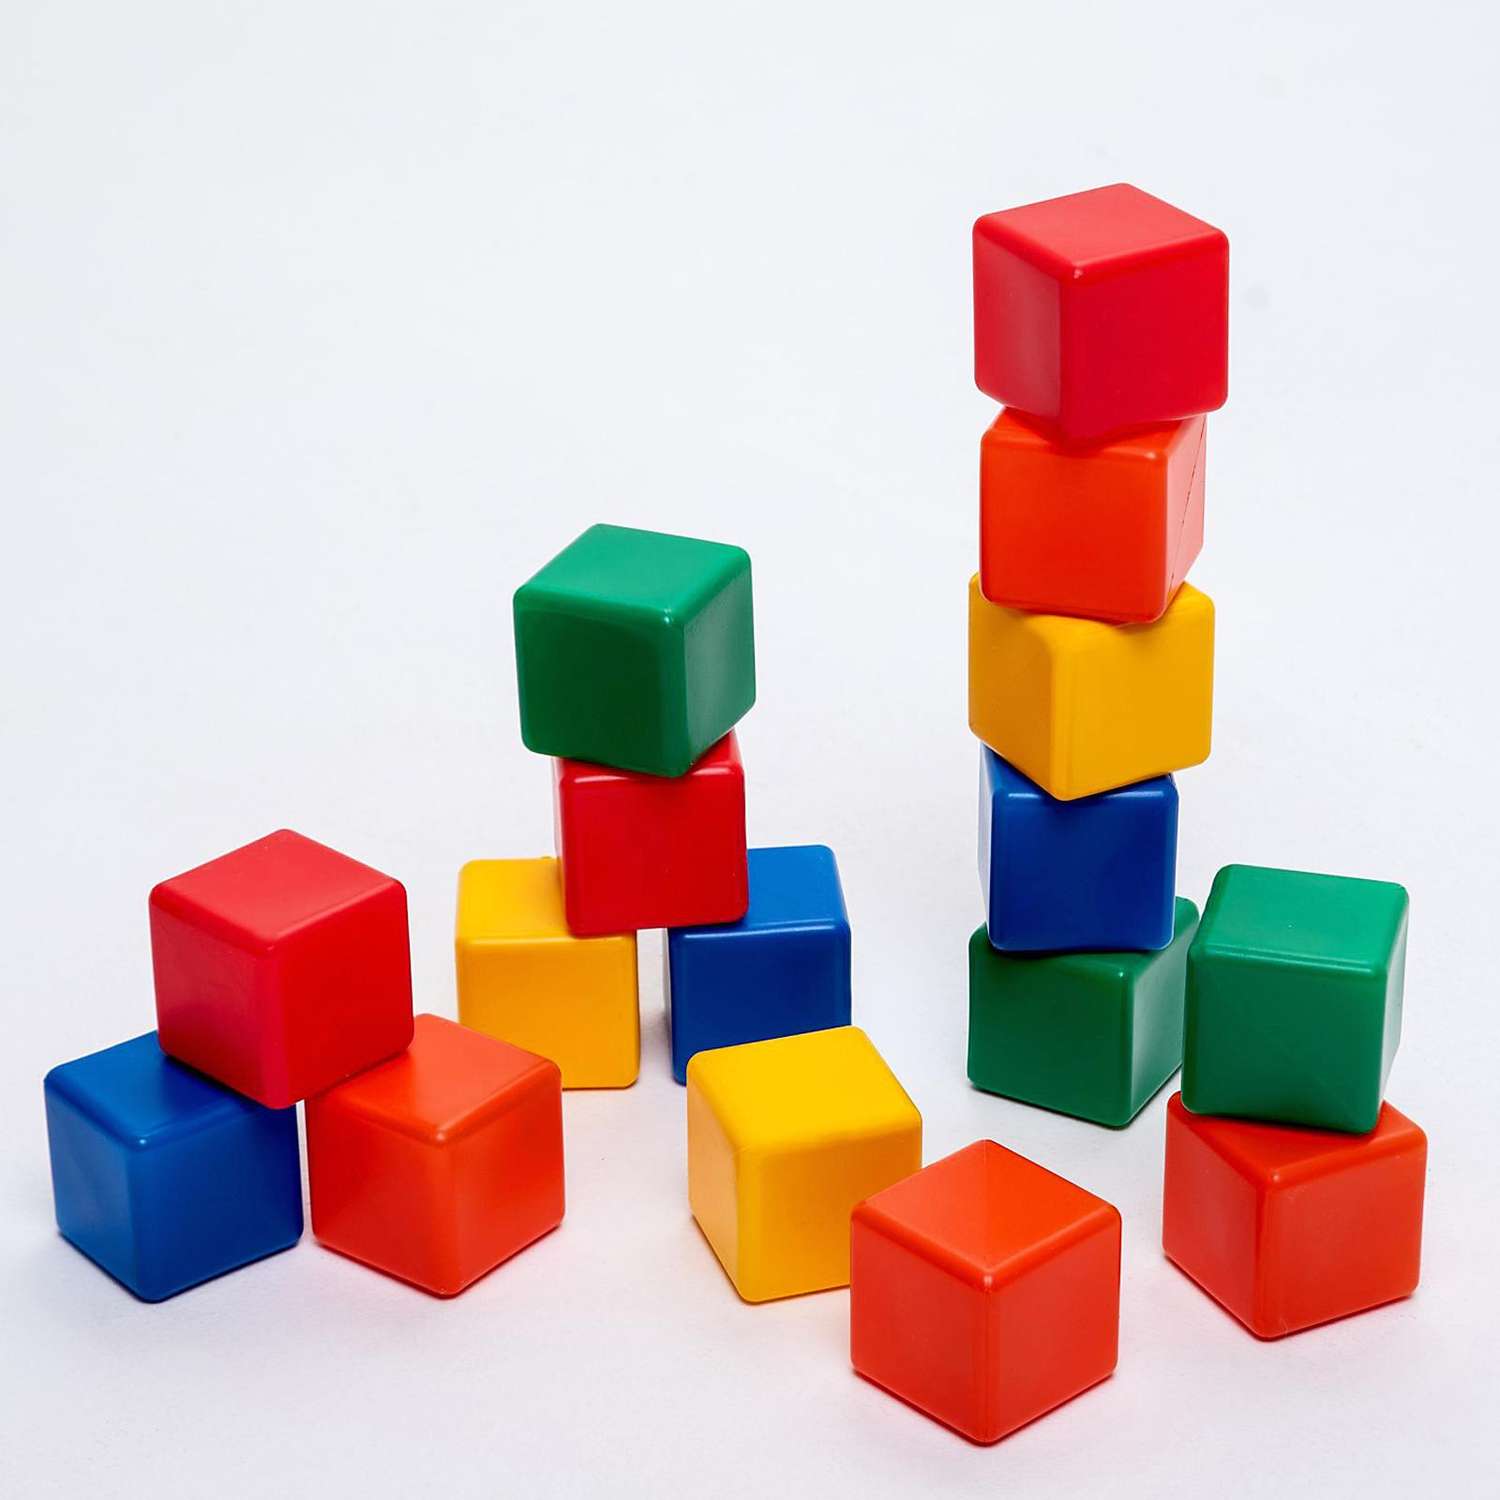 Набор Соломон цветных кубиков.16 штук 6 × 6 см - фото 1